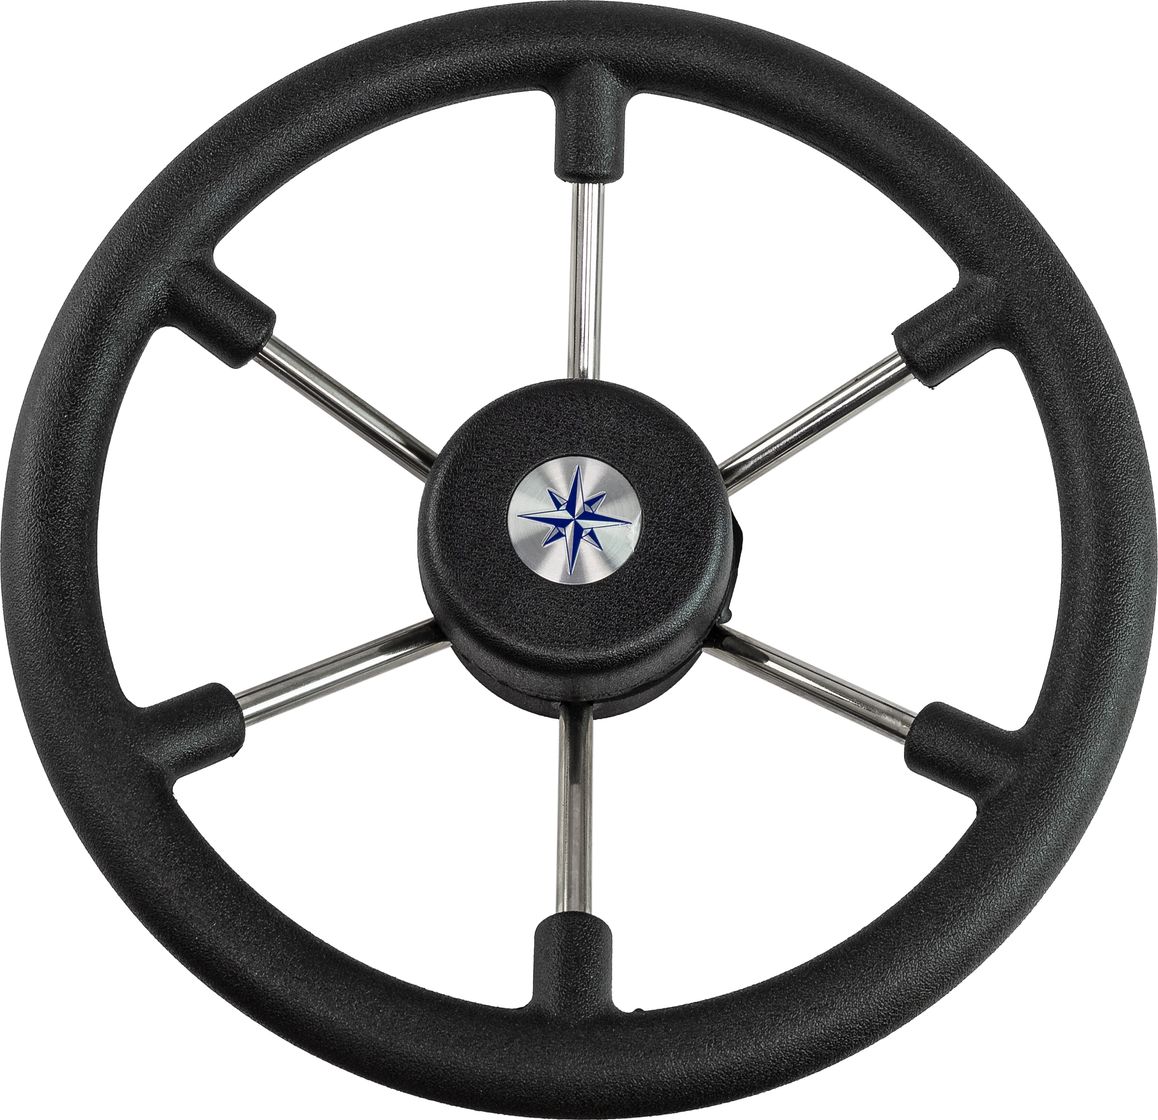 Рулевое колесо LEADER TANEGUM черный обод серебряные спицы д. 330 мм VN7330-01 рулевое колесо leader plast обод серебряные спицы д 330 мм vn8330 01